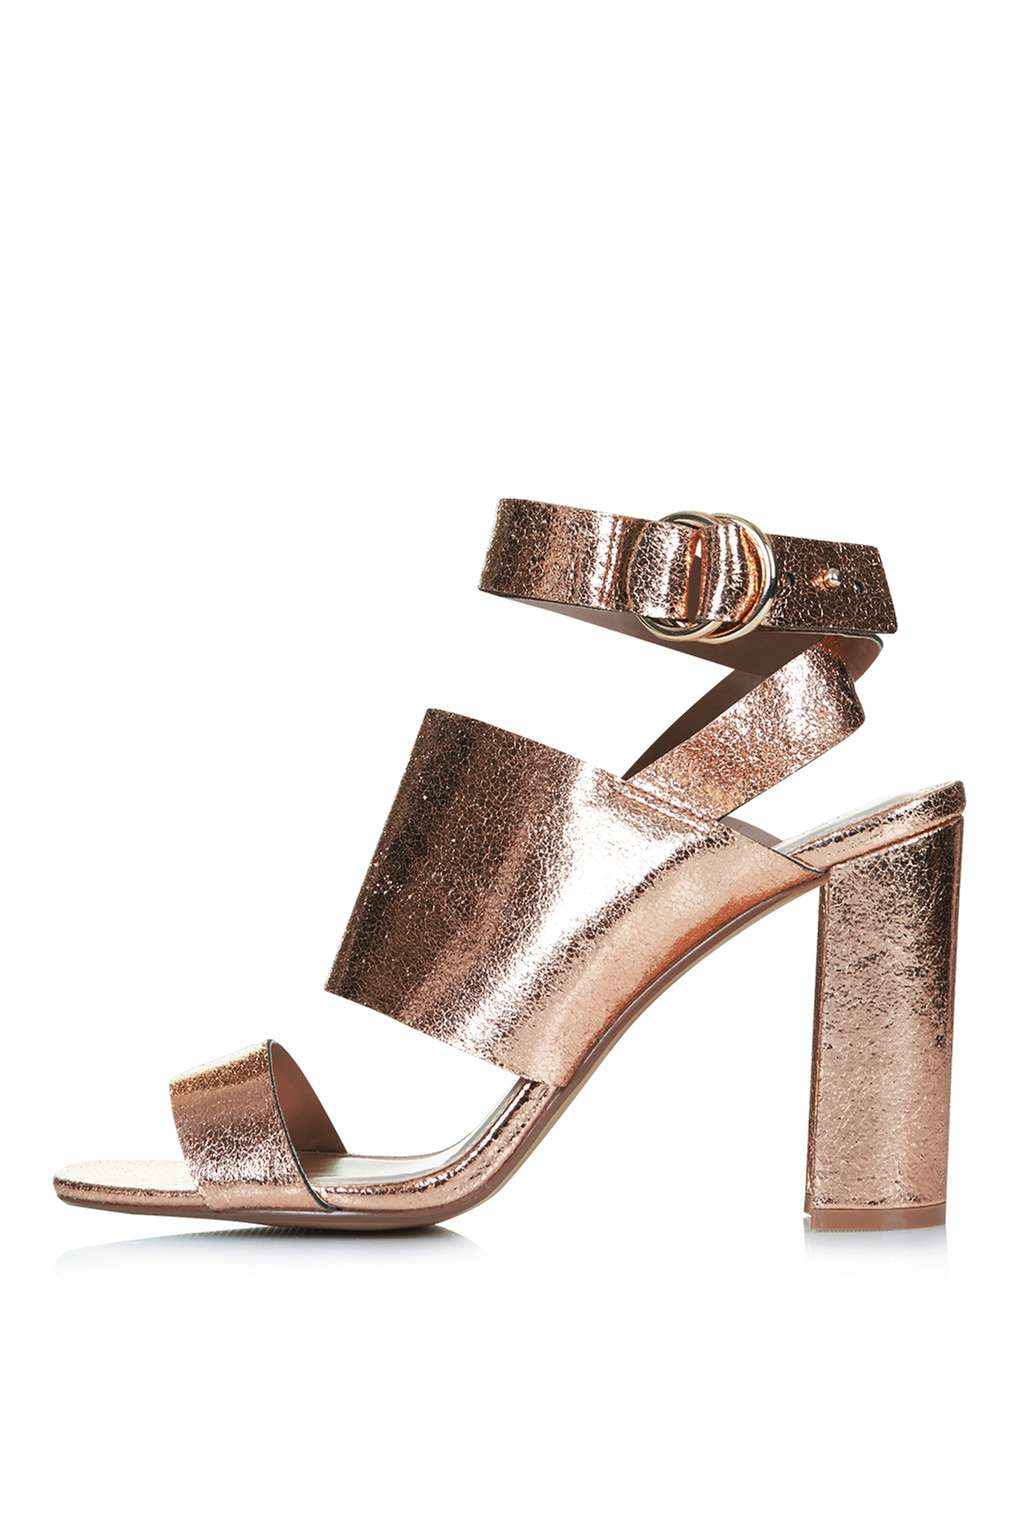 topshop rose gold heels